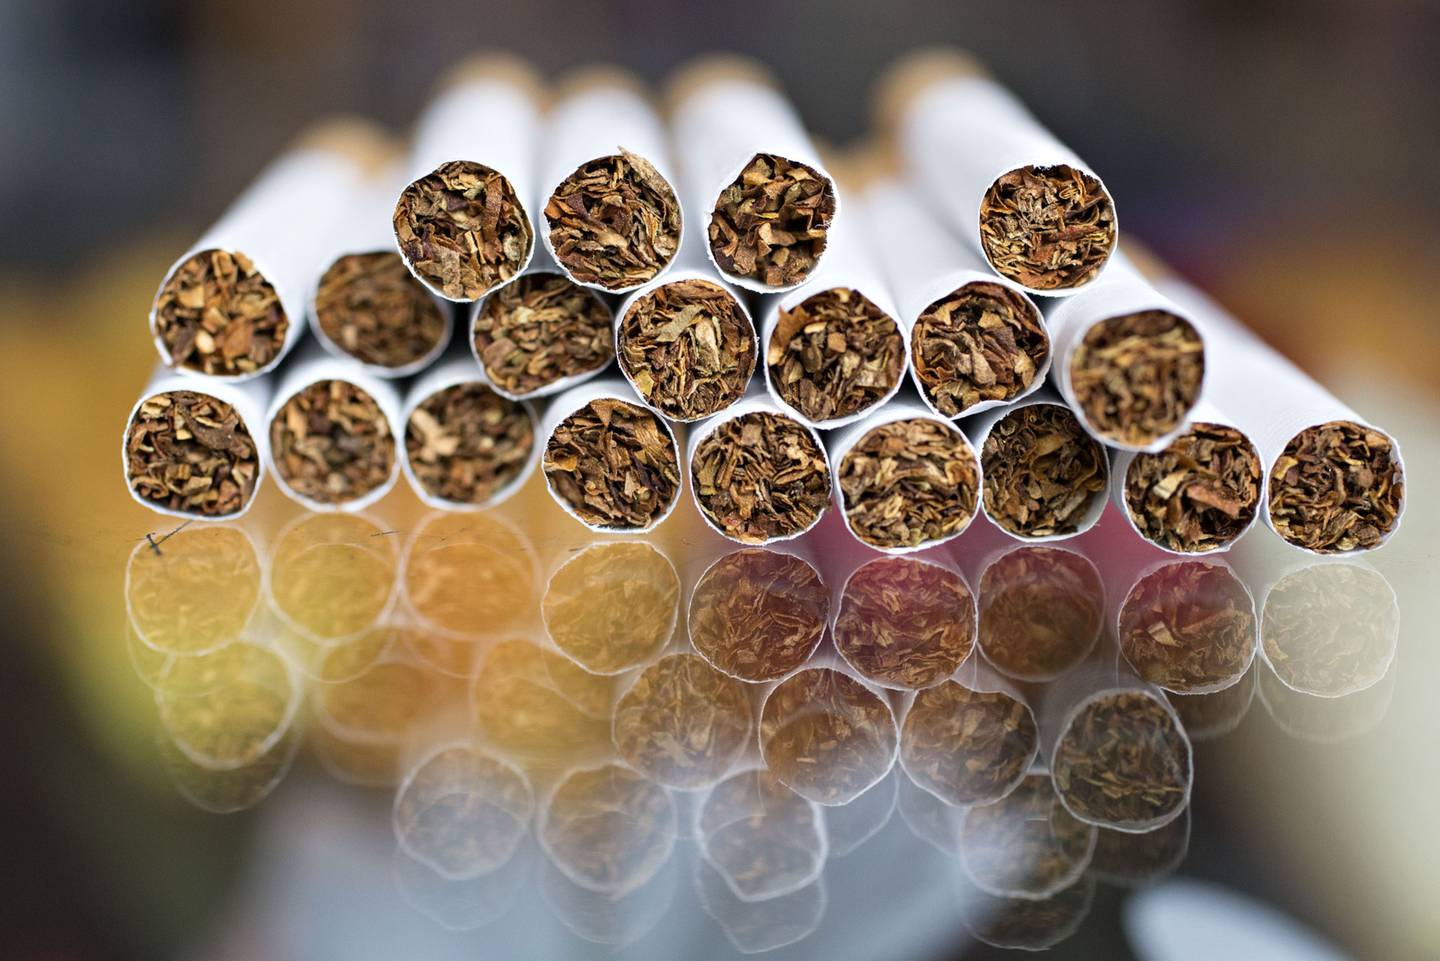 El consumo diario promedio por unidades de cigarrillos legales es de 5,11 frente al 6,53 de cigarrillos ilegales.